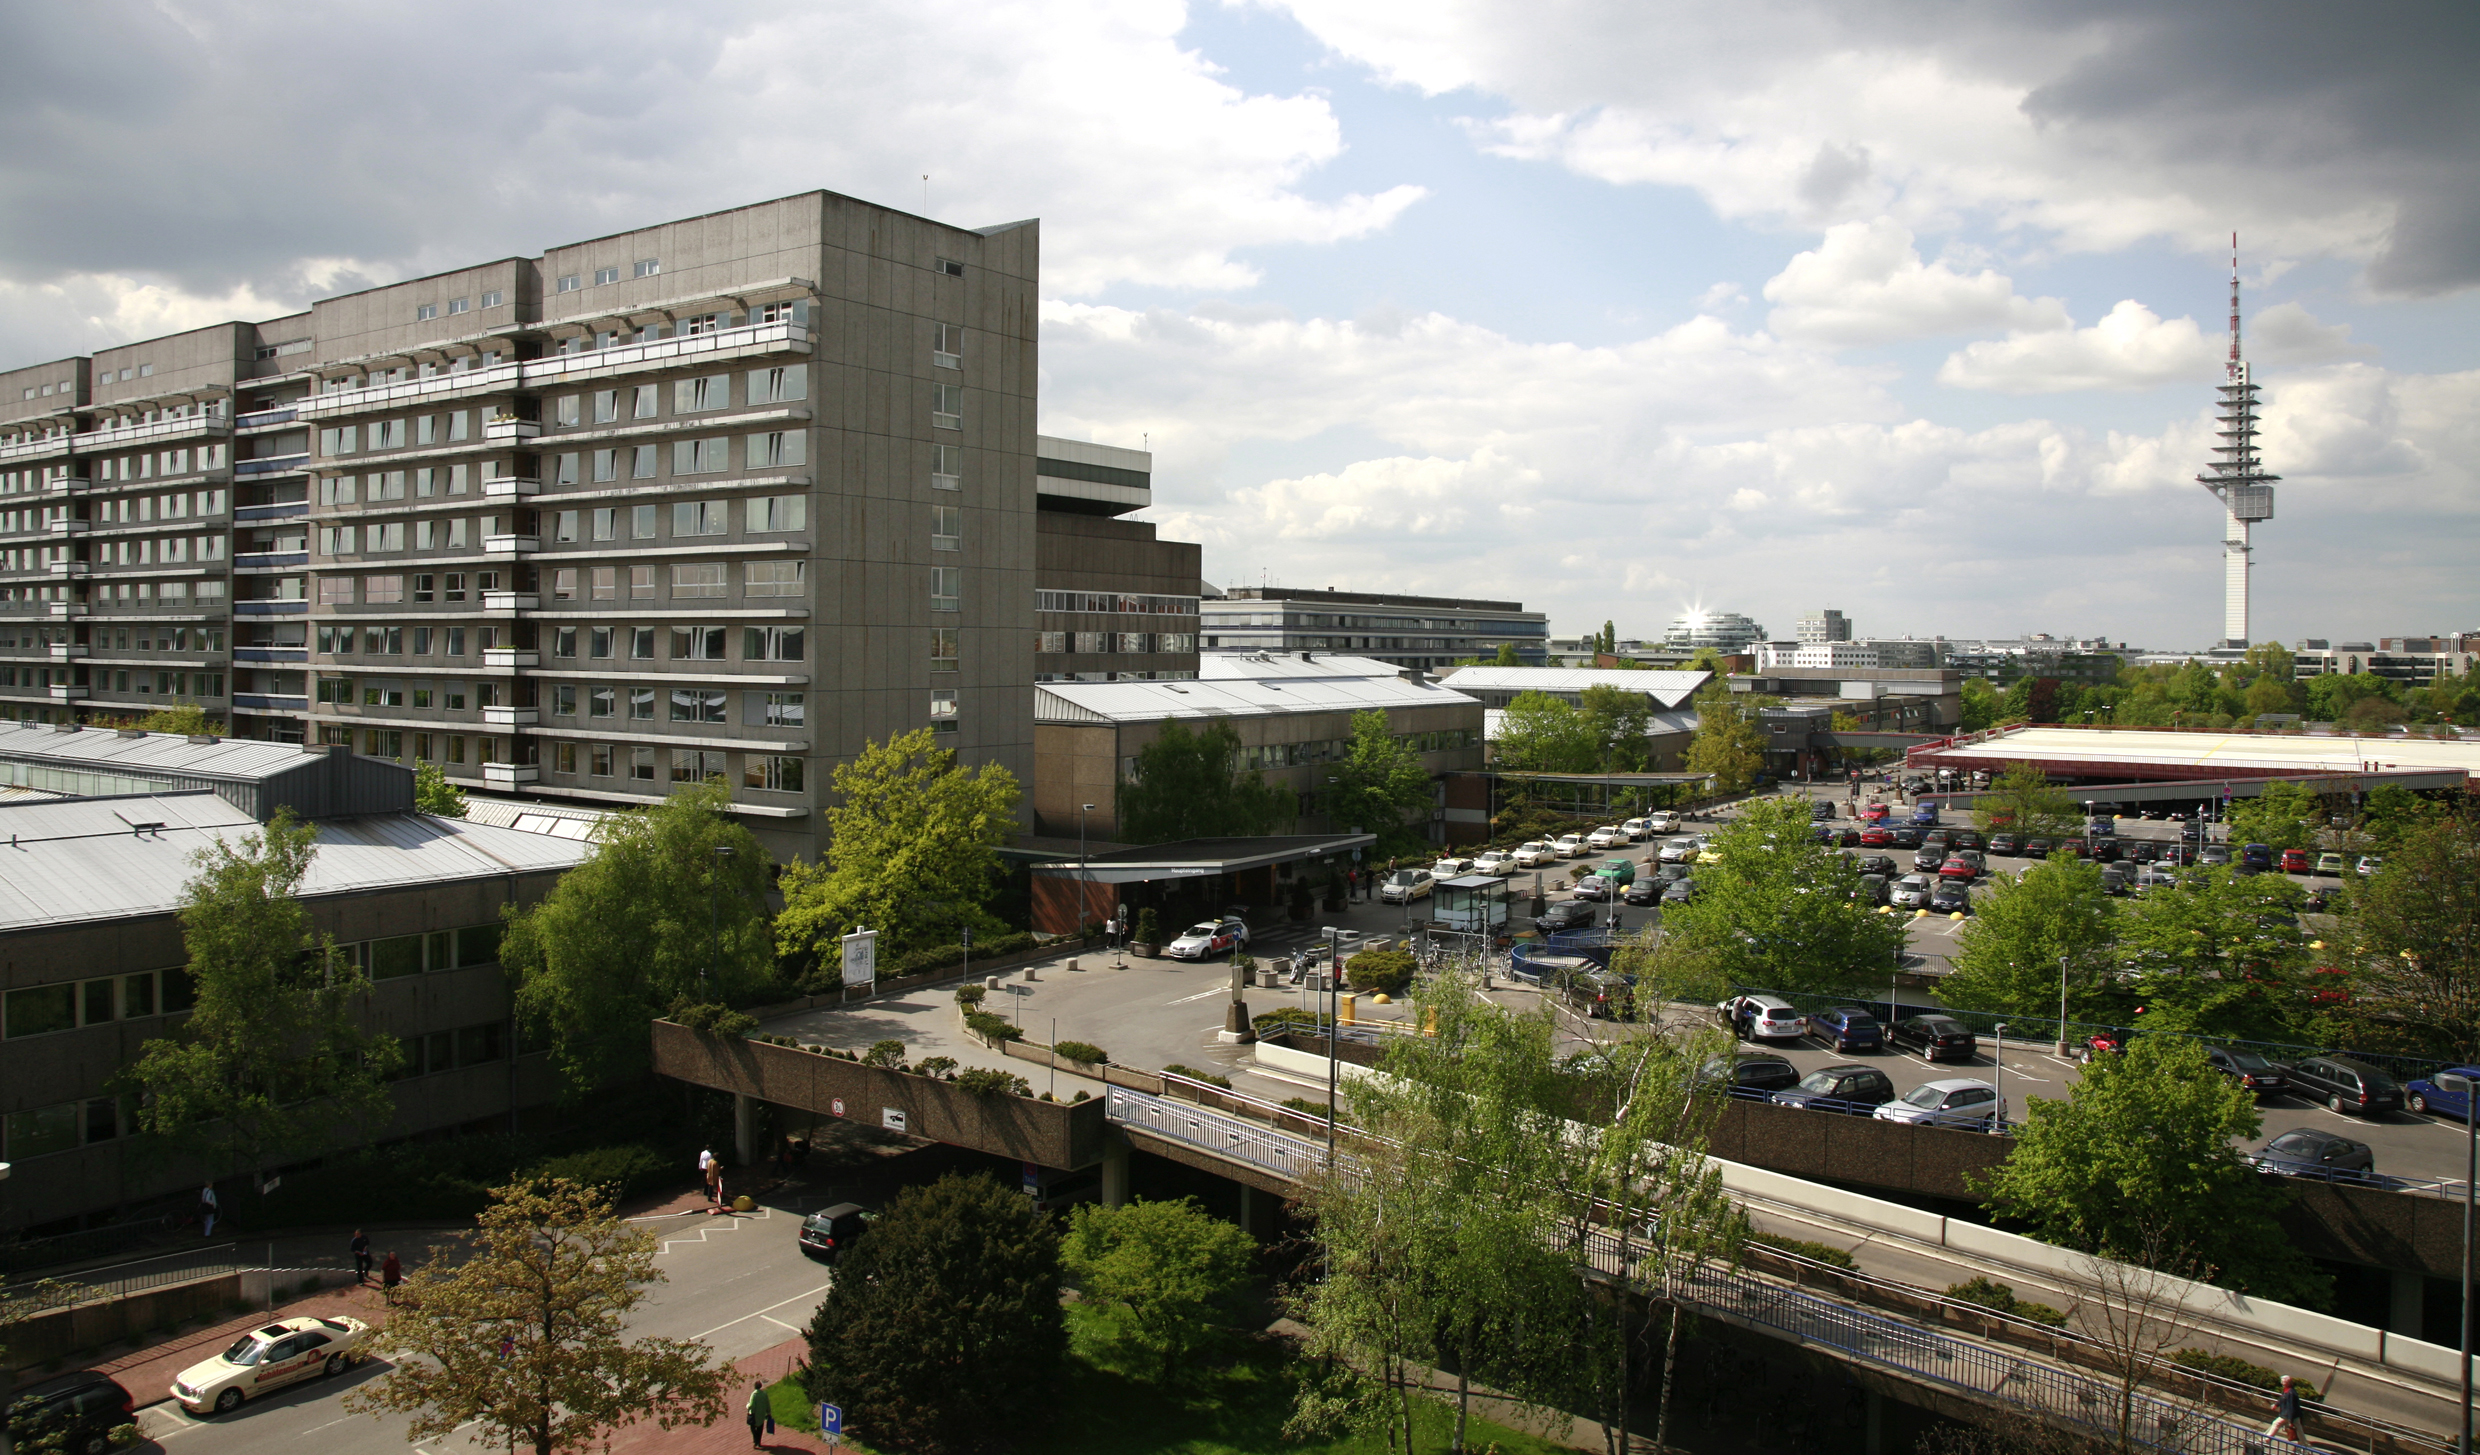 Blick von oben auf das Bettenhaus der MHH mit dem Parkdeck und weiteren Gebäuden des Campus.